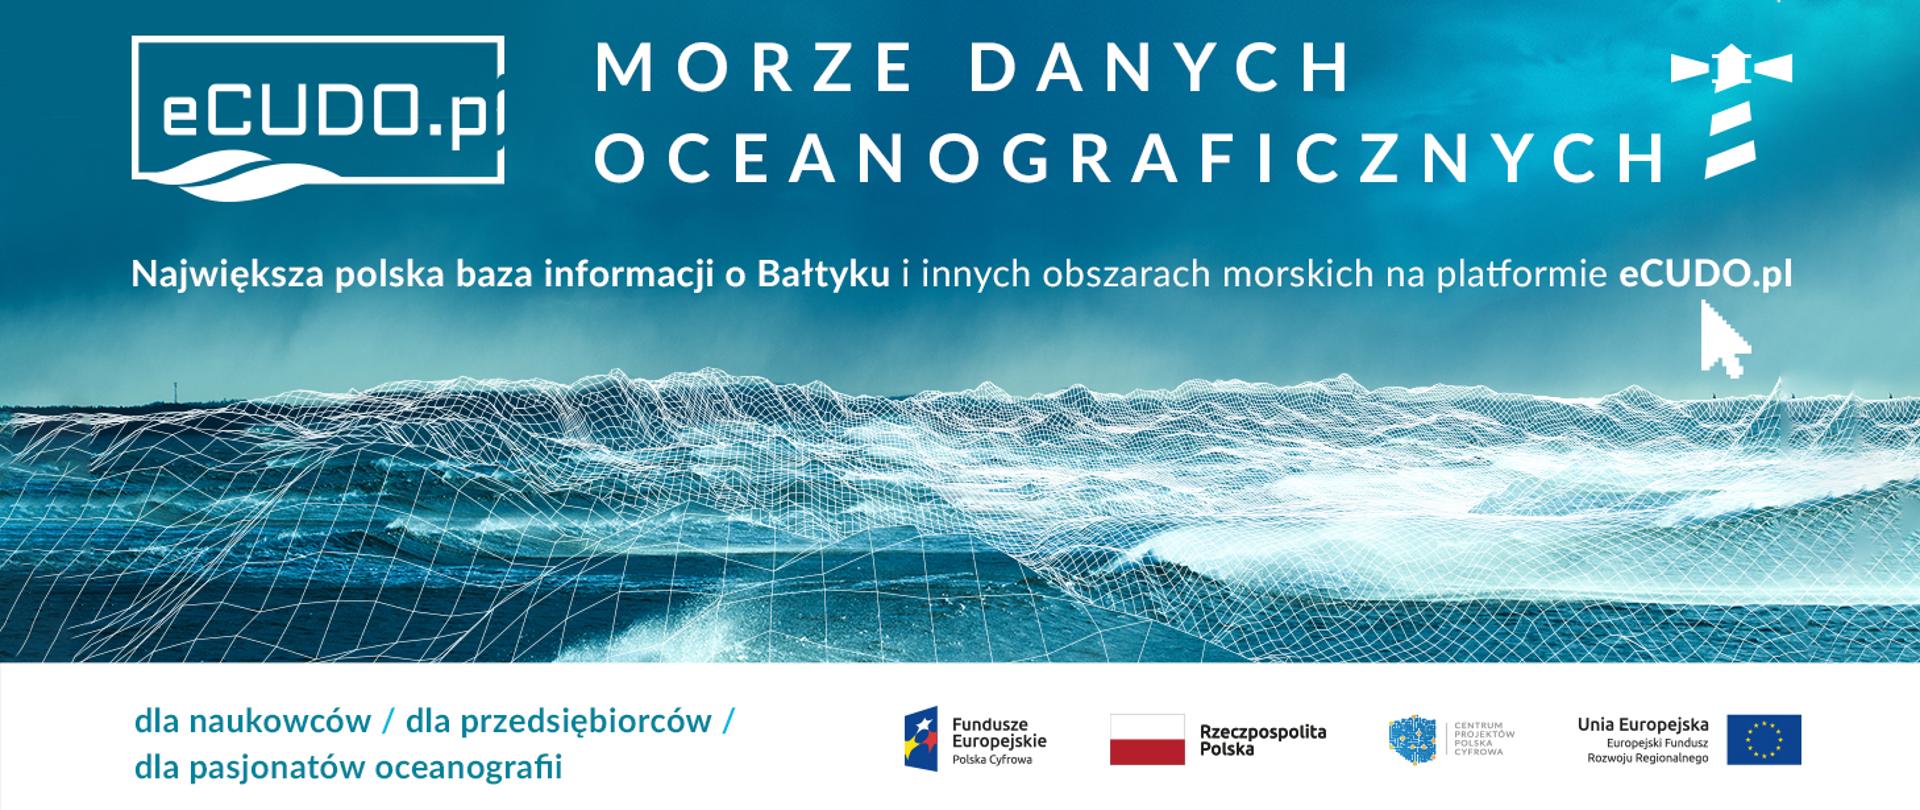 Morze Danych Oceanograficznych - Największa polska baza informacji o Bałtyku i innych obszarach morskich na platformie eCUDO.pl